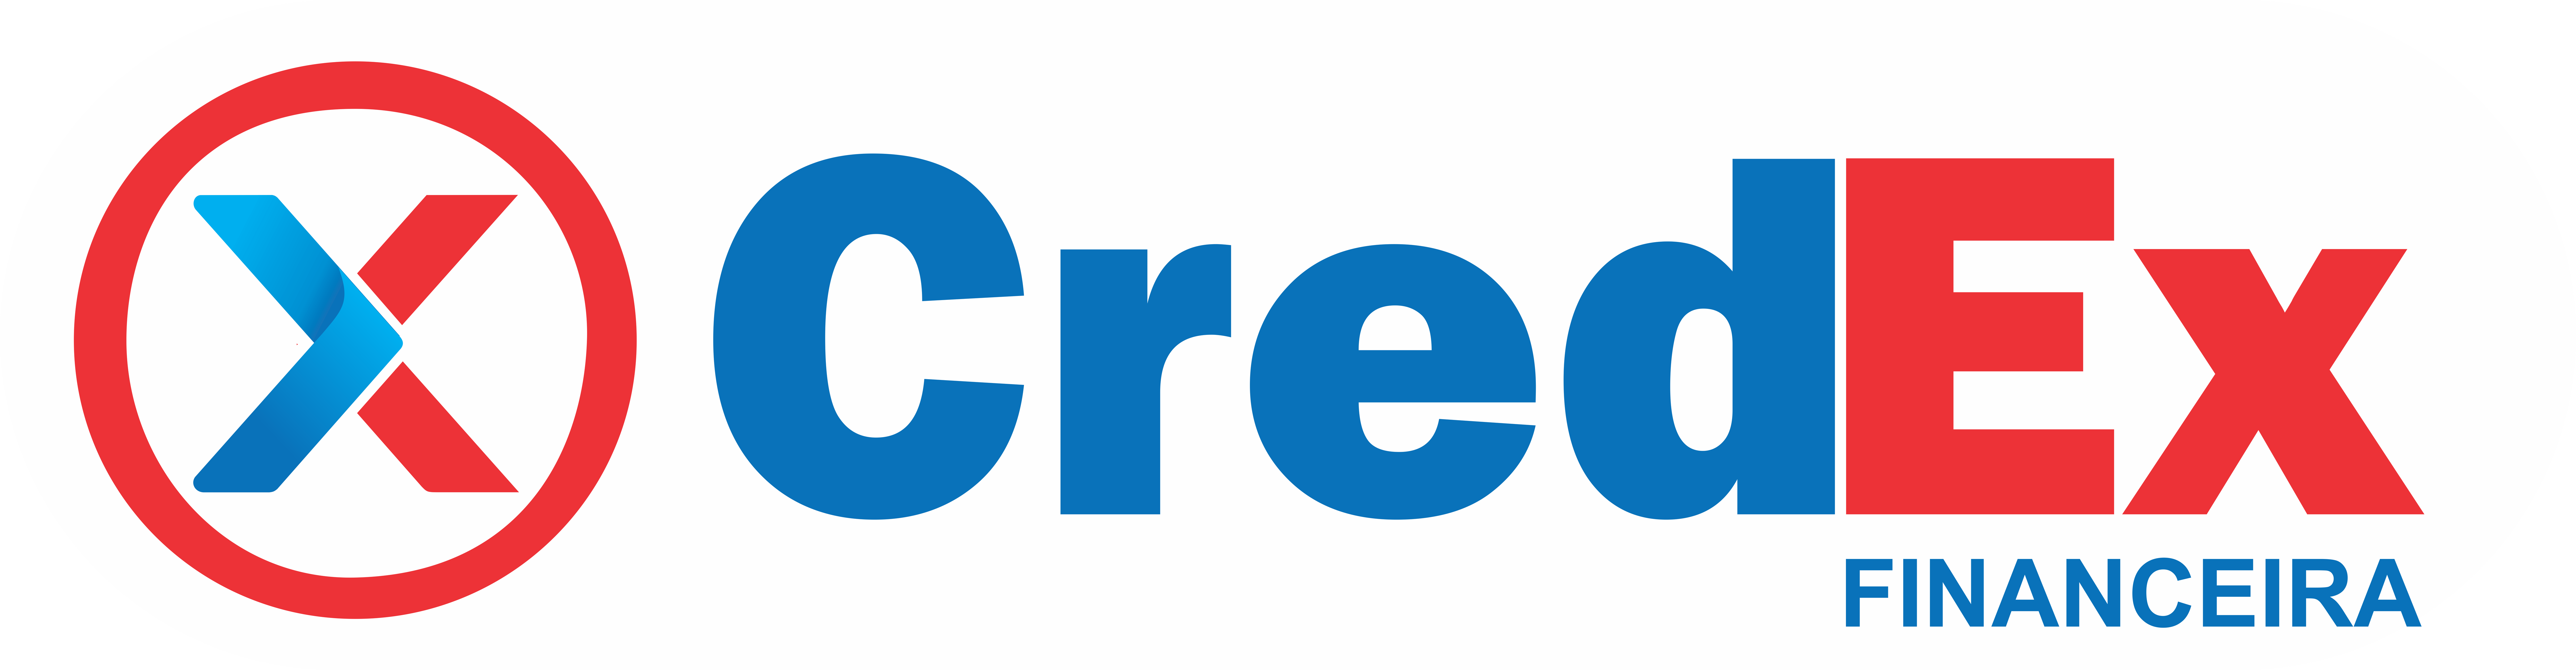 Seja Bem vindo a CredEx Financeira!